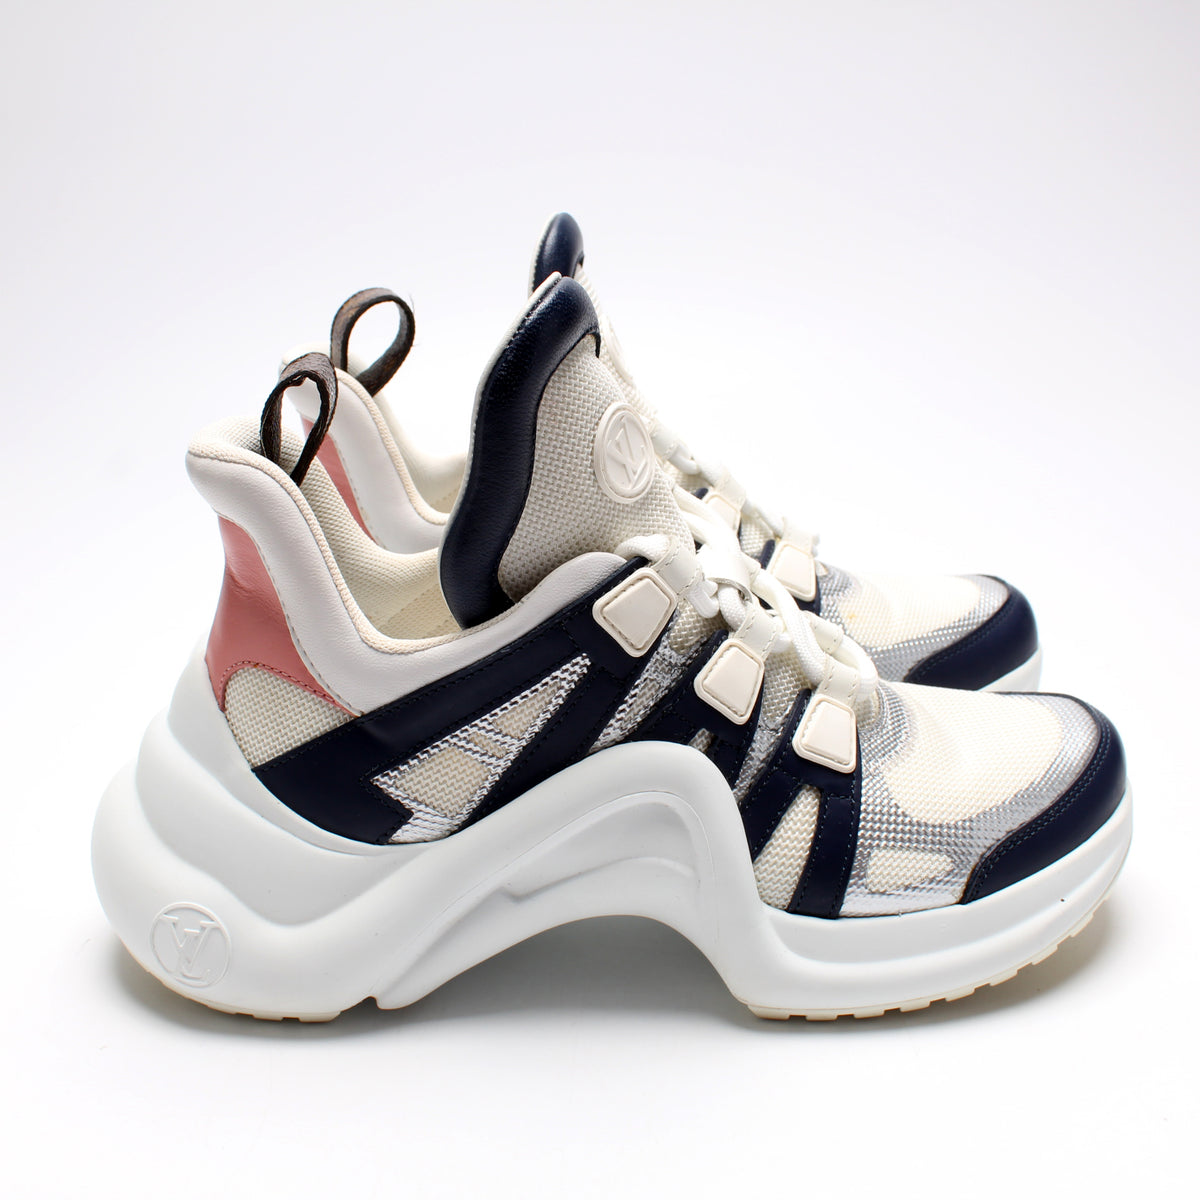 Louis Vuitton, Shoes, Authentic Louis Vuitton Arclight Sneakers Size 36